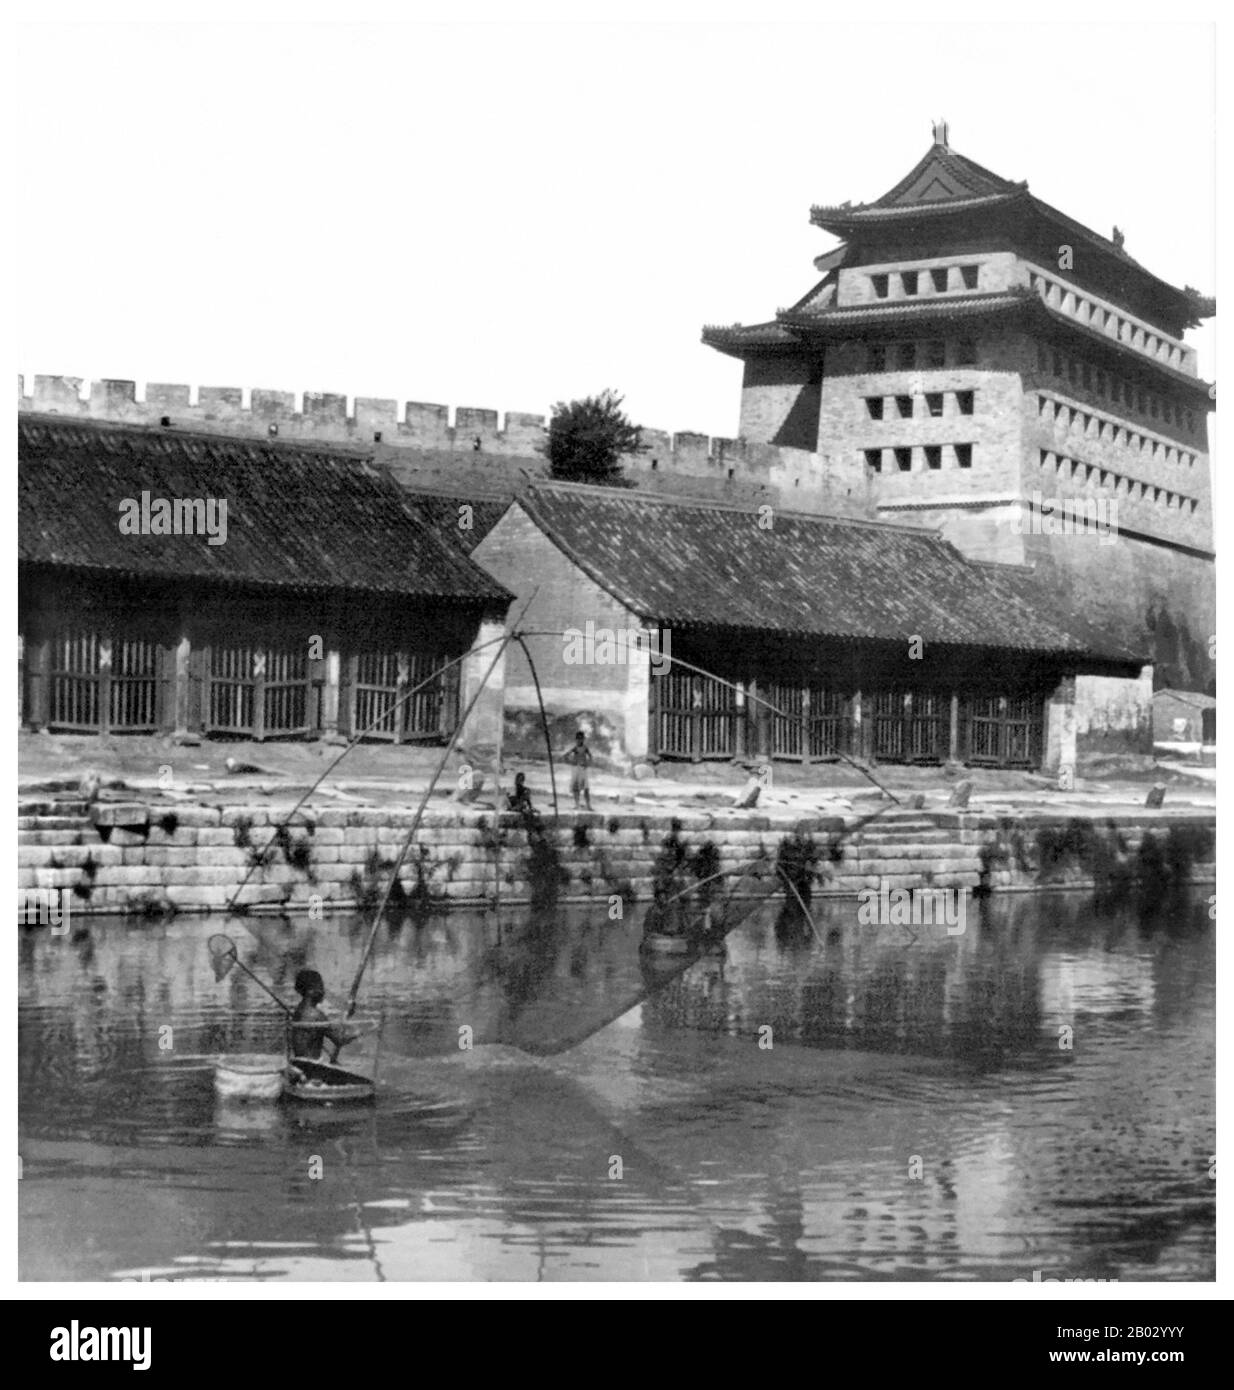 Il Canal Grande (conosciuto anche come il Canal Grande di Pechino-Hangzhou), un sito patrimonio dell'umanità dell'UNESCO, è il canale più lungo o il fiume artificiale del mondo e una famosa destinazione turistica. A partire da Pechino, attraversa Tianjin e le province di Hebei, Shandong, Jiangsu e Zhejiang fino alla città di Hangzhou, che collega il fiume giallo e il fiume Yangtze. Le parti più antiche del canale risalgono al 5th secolo a.C., anche se le varie sezioni furono finalmente combinate durante la dinastia Sui (581–618 d.C.). Foto Stock